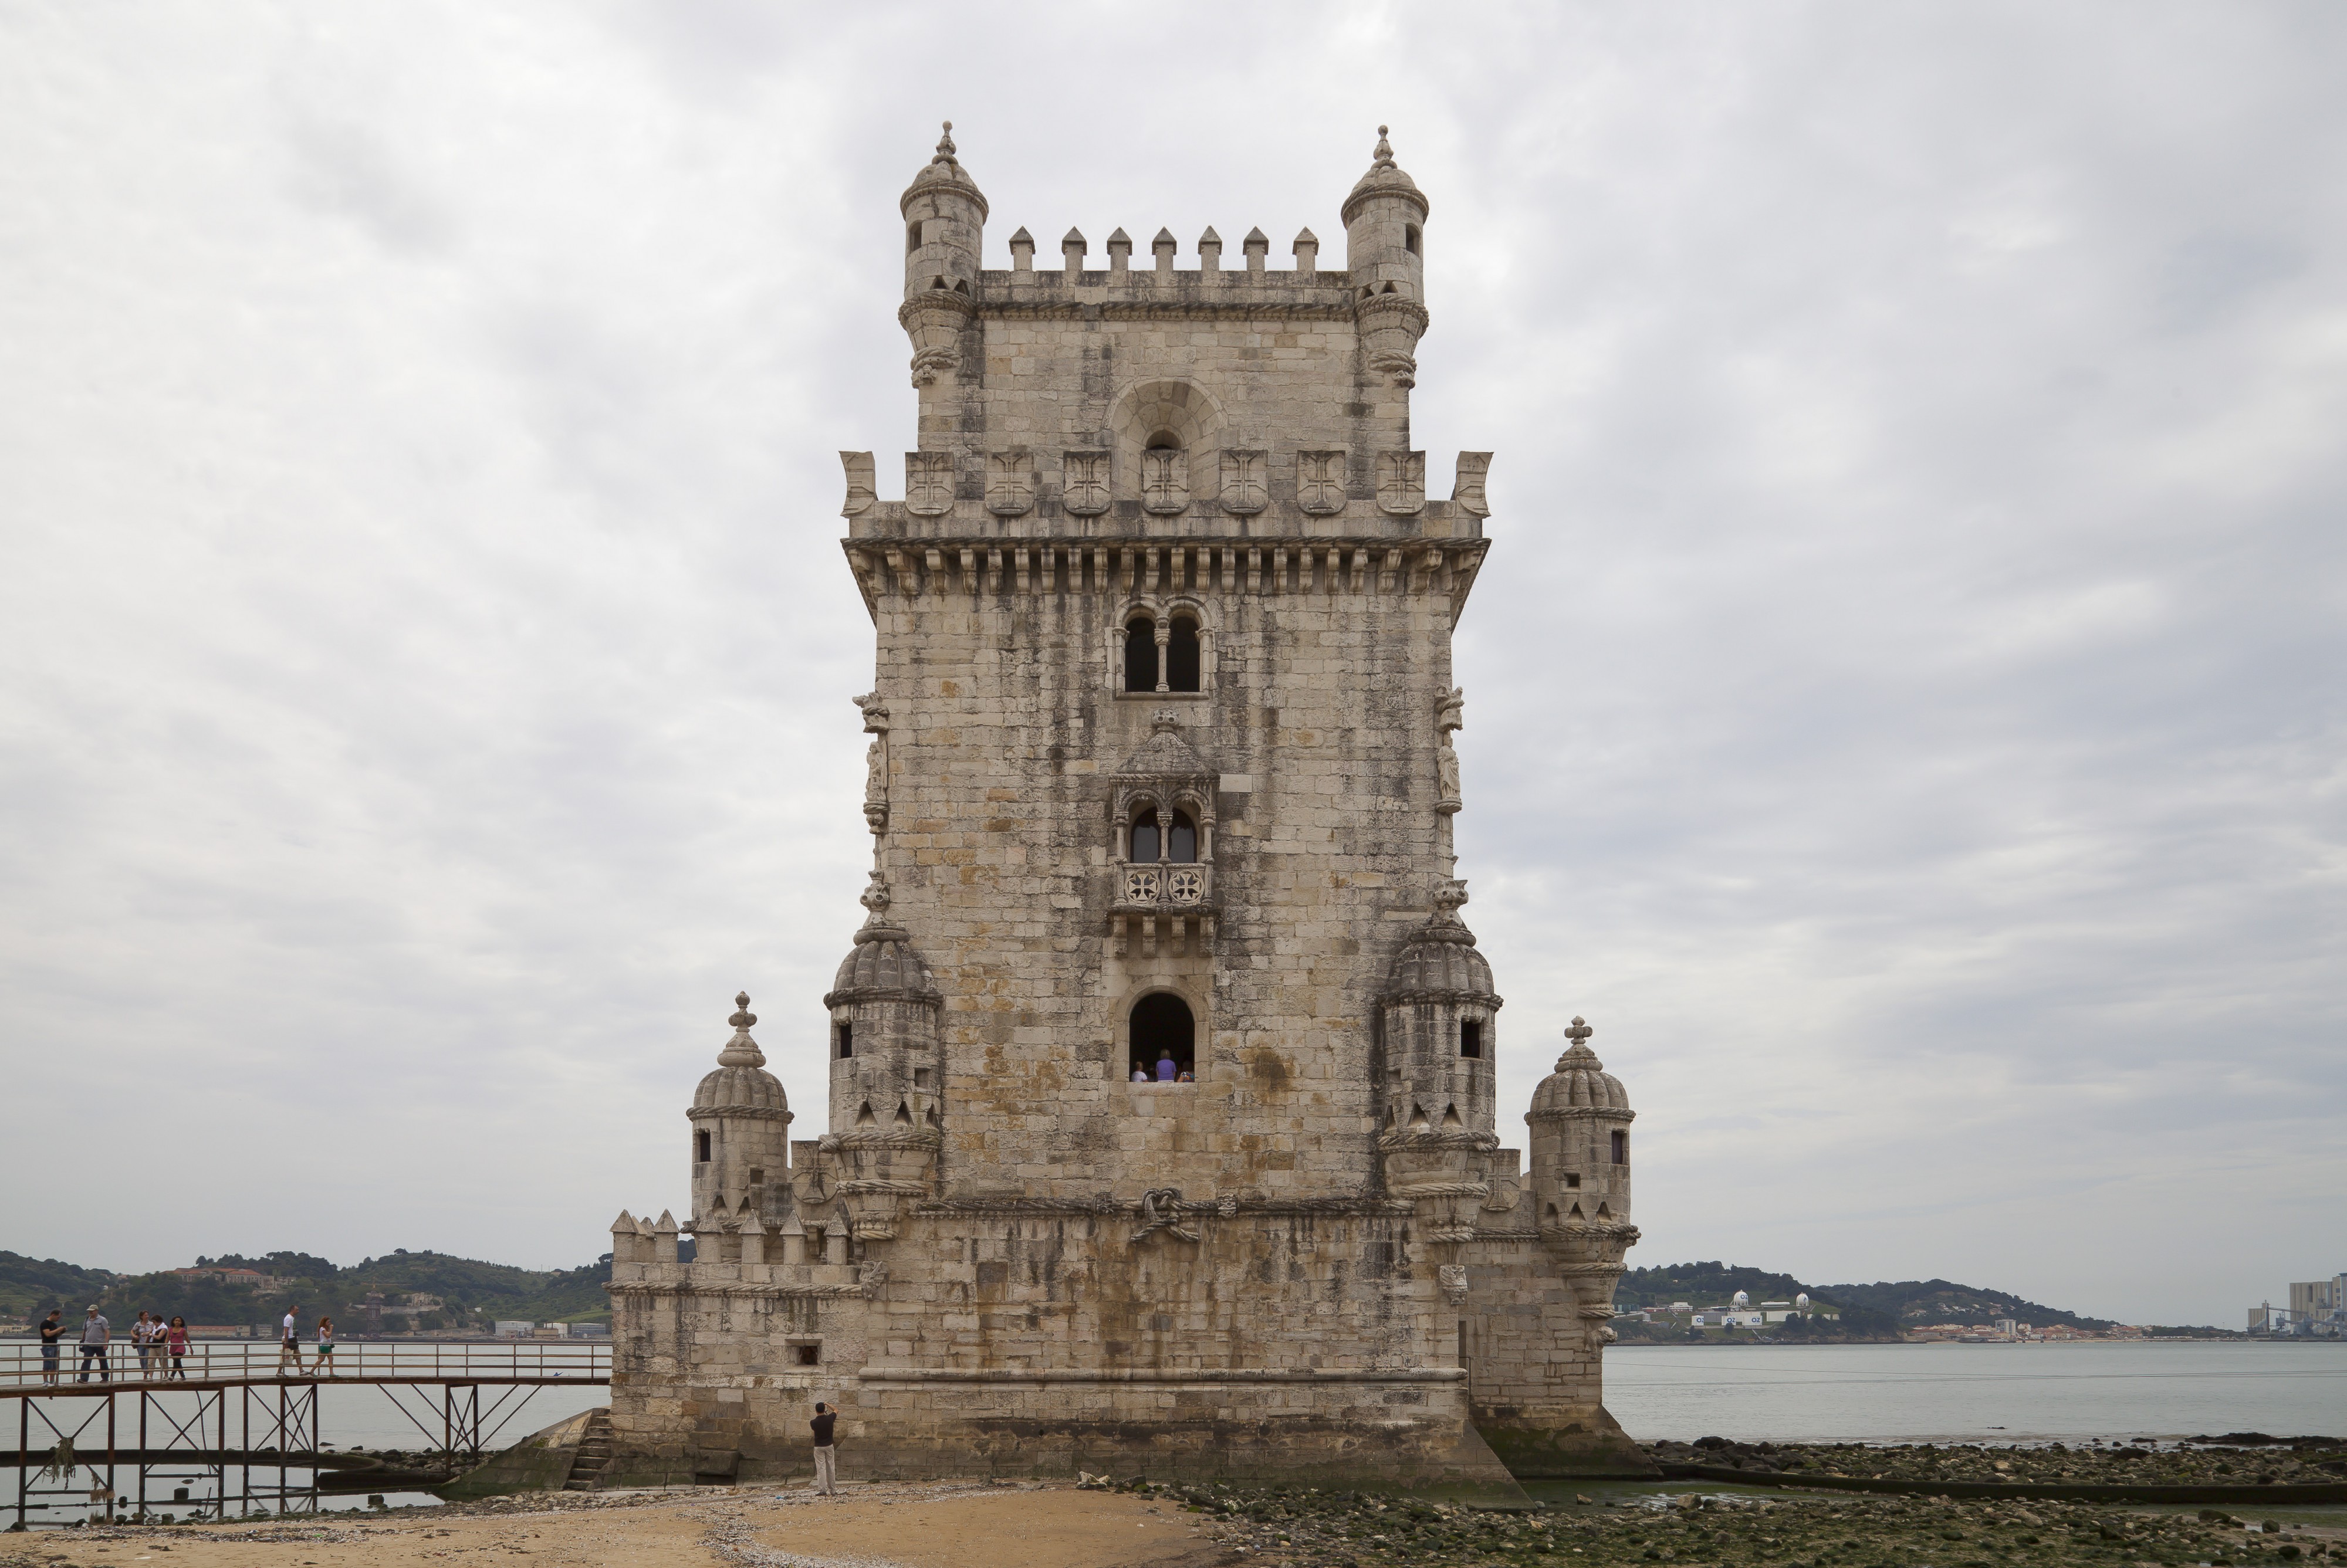 Torre de Belém, Lisboa, Portugal, 2012-05-12, DD 19